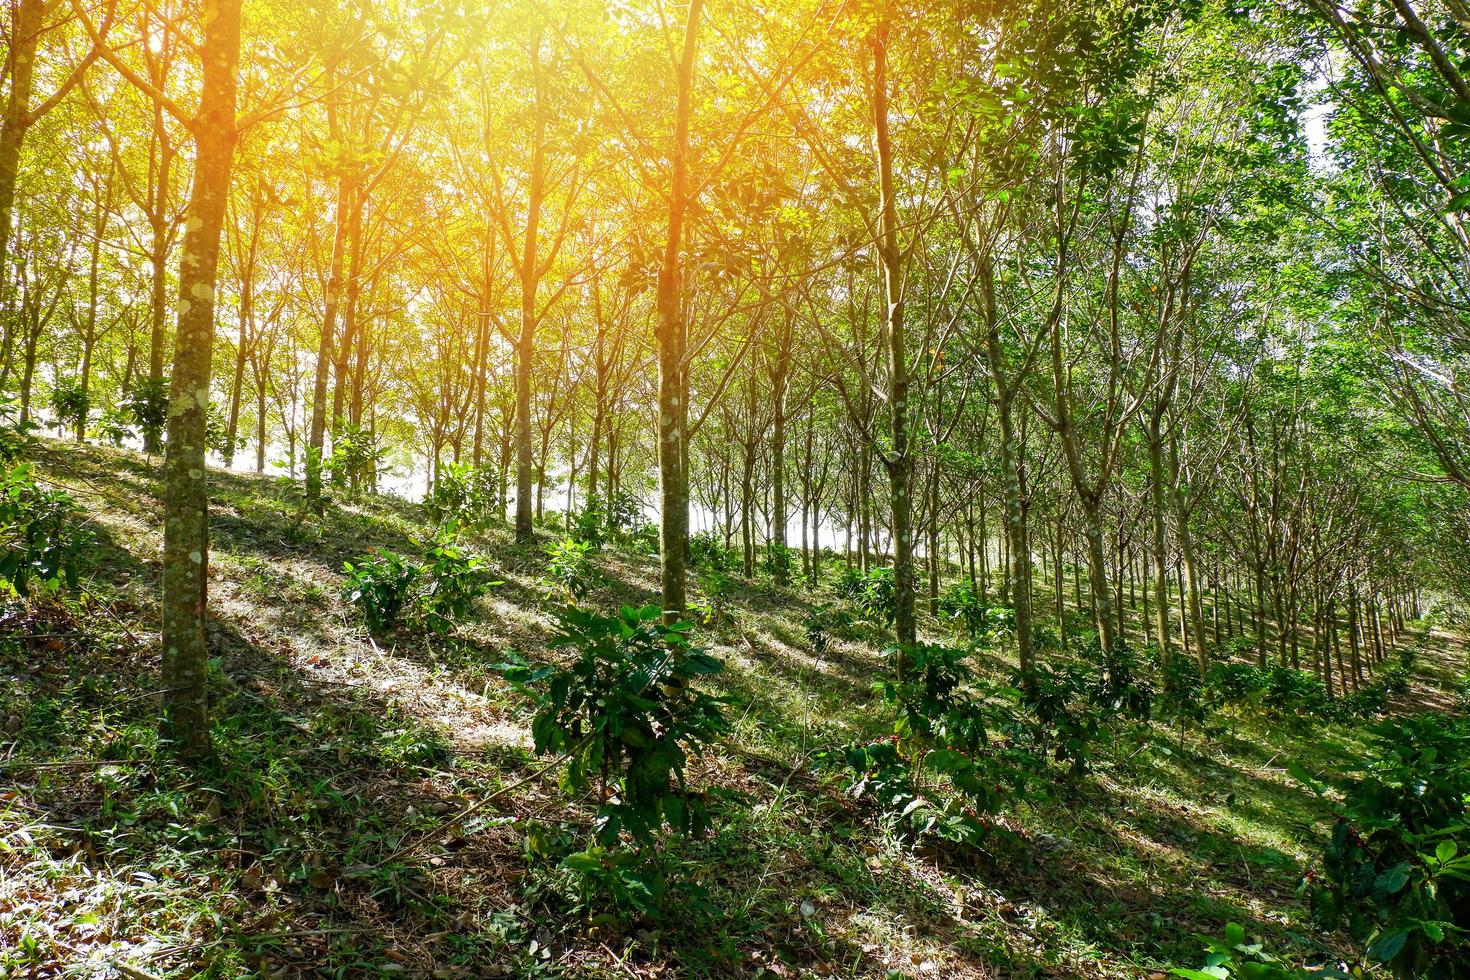 gummiplantagenlandwirtschaft von gummibaumwald auf hügel in asien und sonnenuntergang mit kaffeebaum unter gummiplantagen gemischte landwirtschaft foto